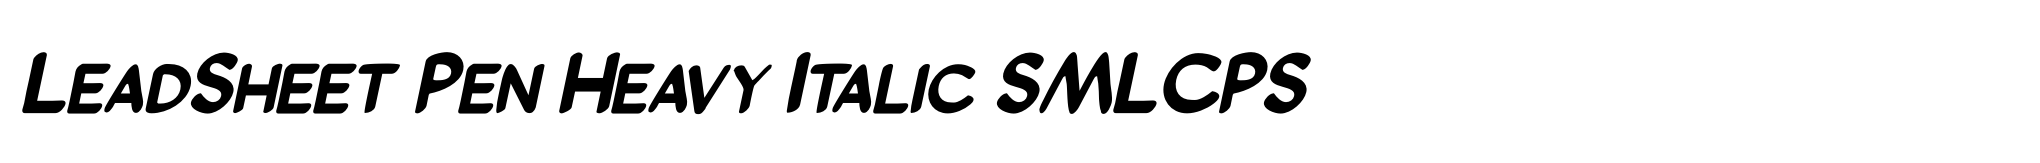 LeadSheet Pen Heavy Italic SMLCPS image